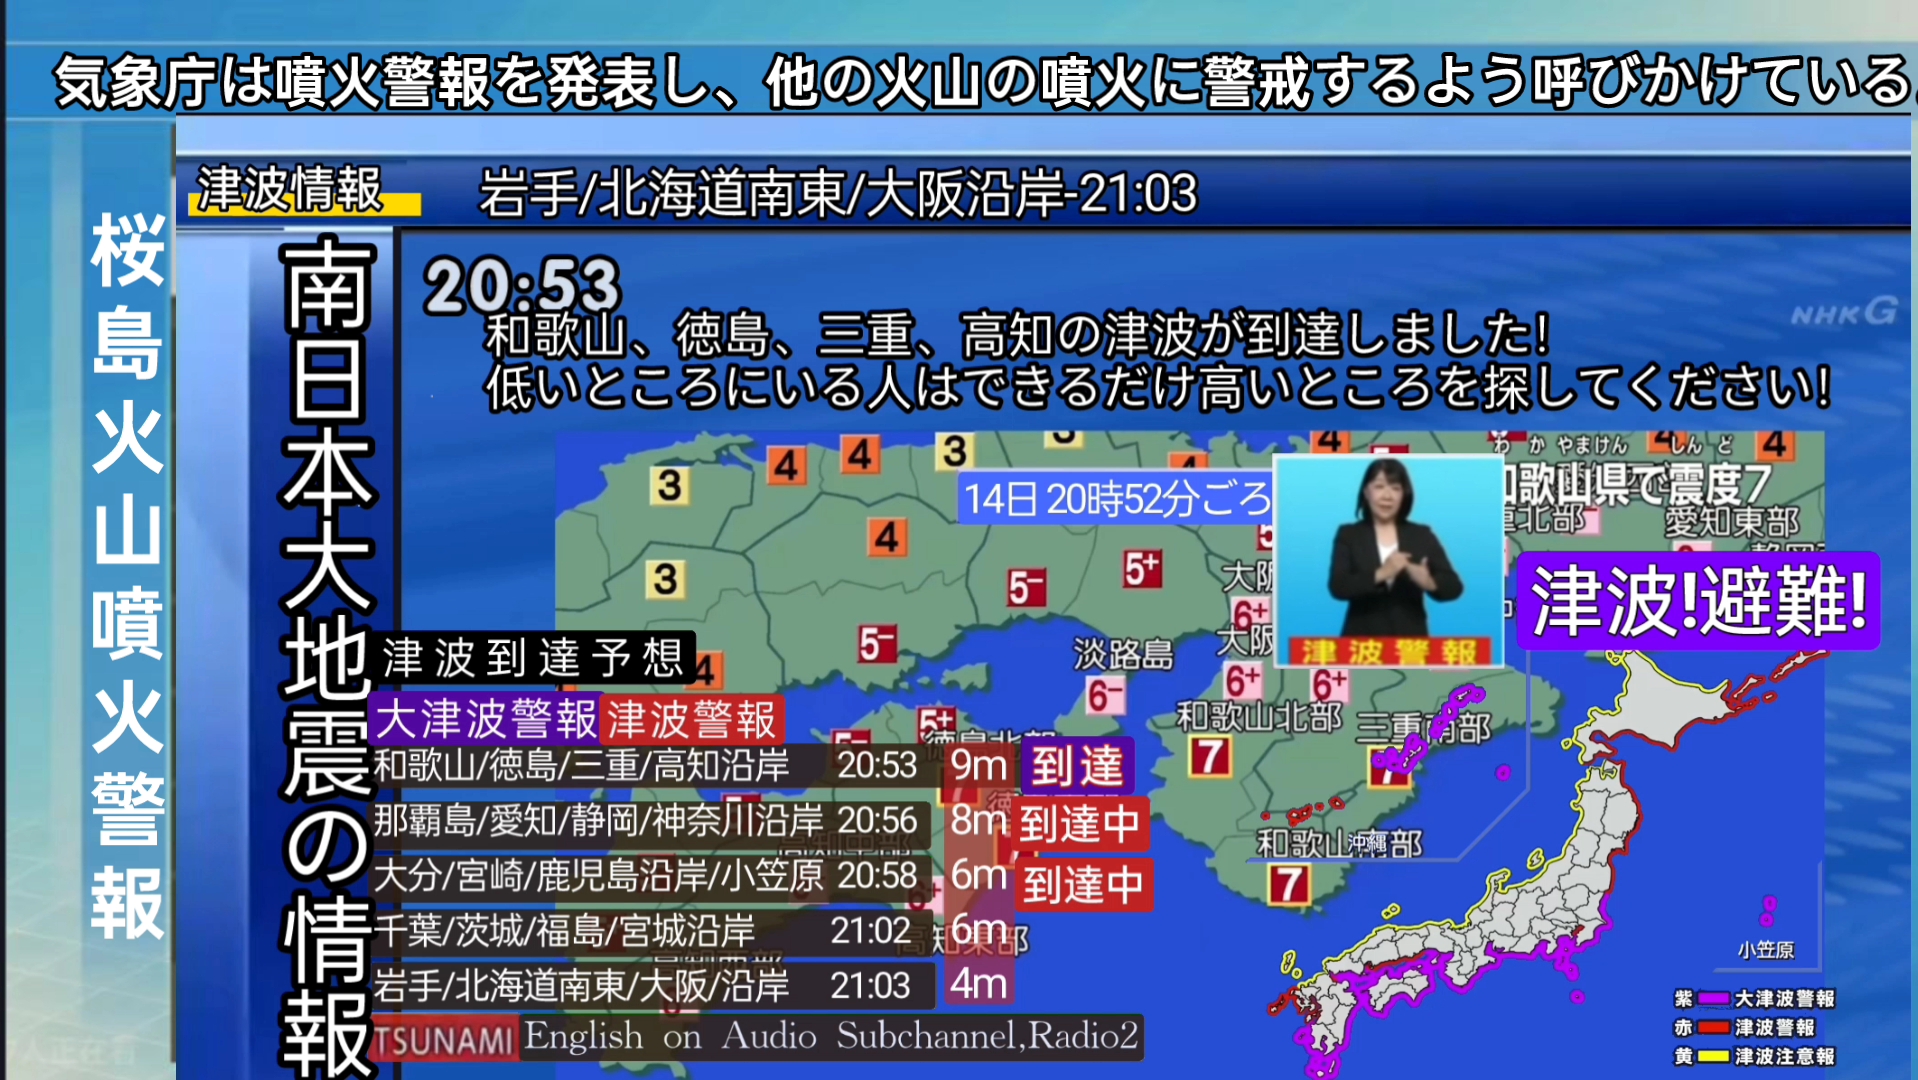 【设想灾难:超自然地震】日本附近二十个震源/9米海啸丨架空放送情况